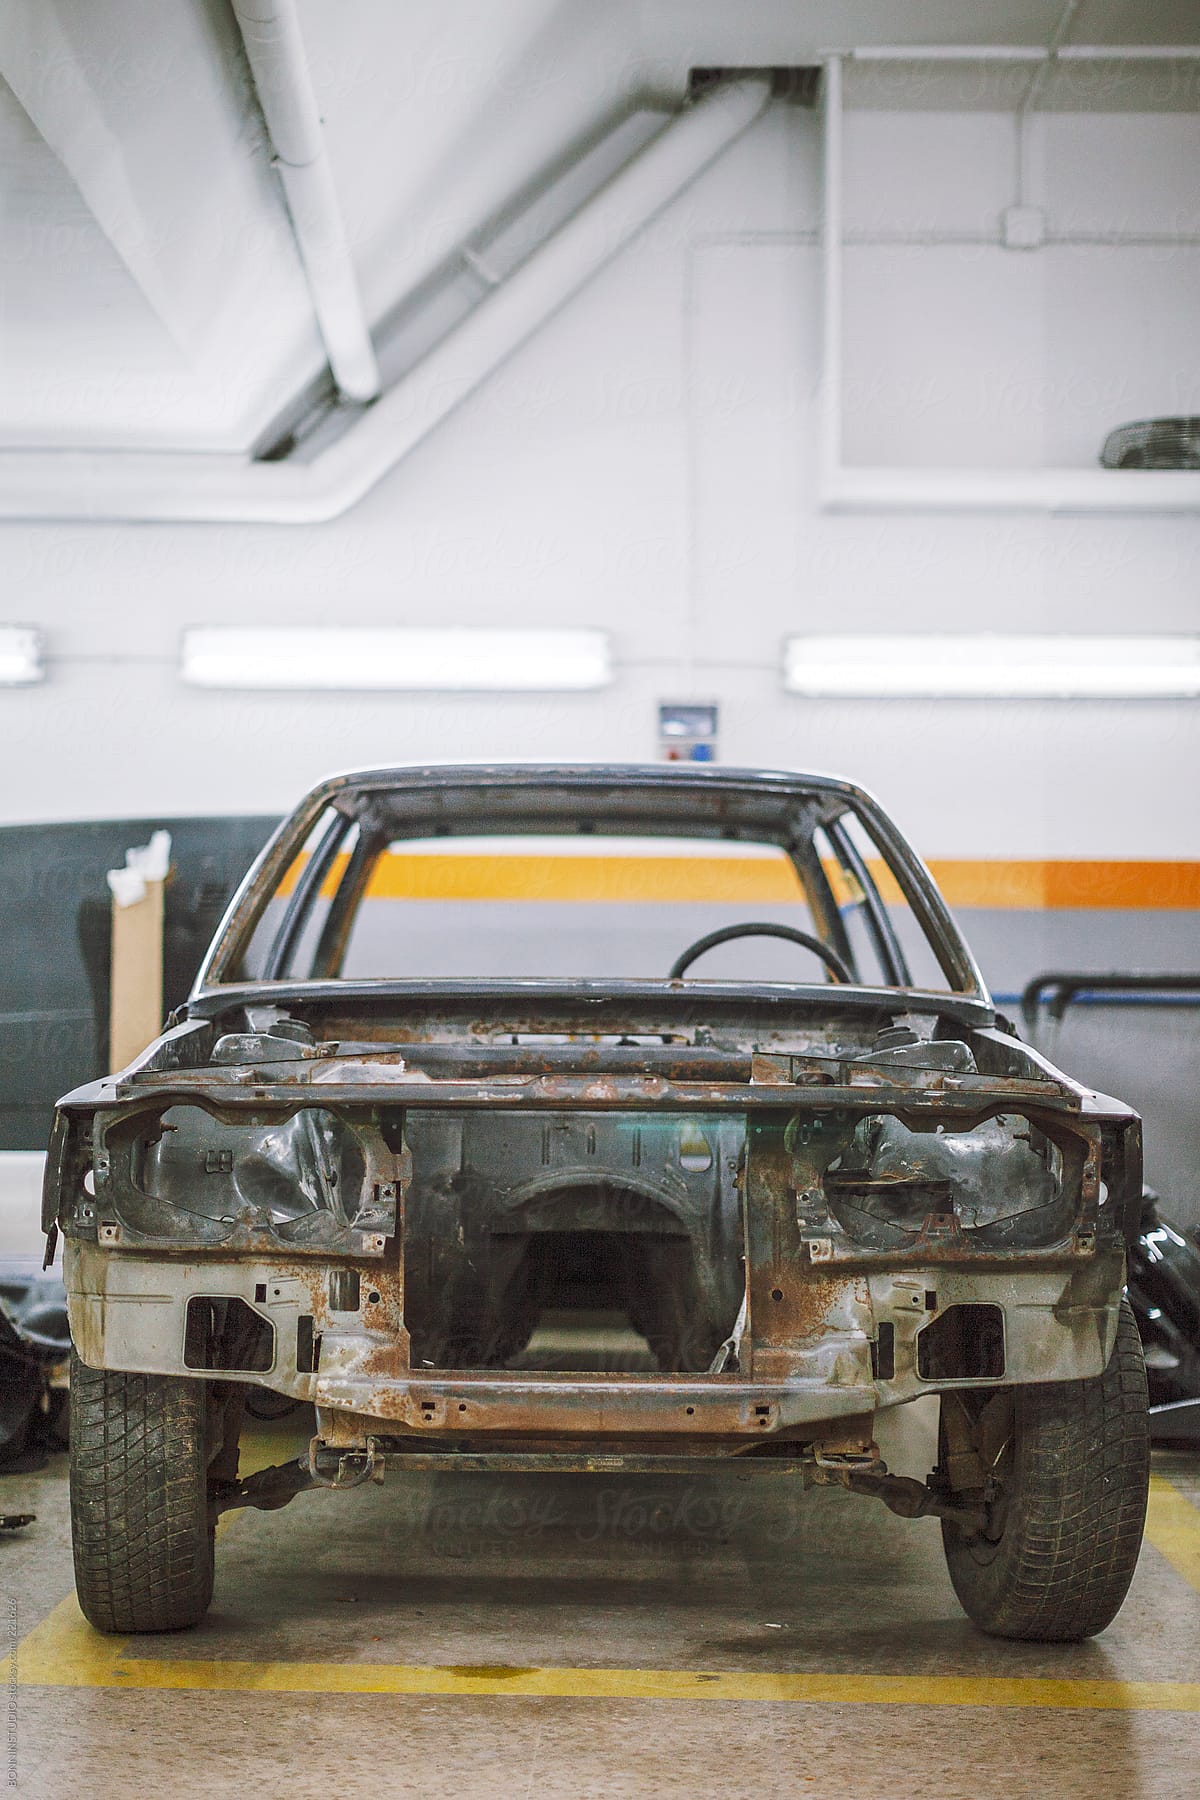 The bodywork of a vintage vehicle on a car workshop.